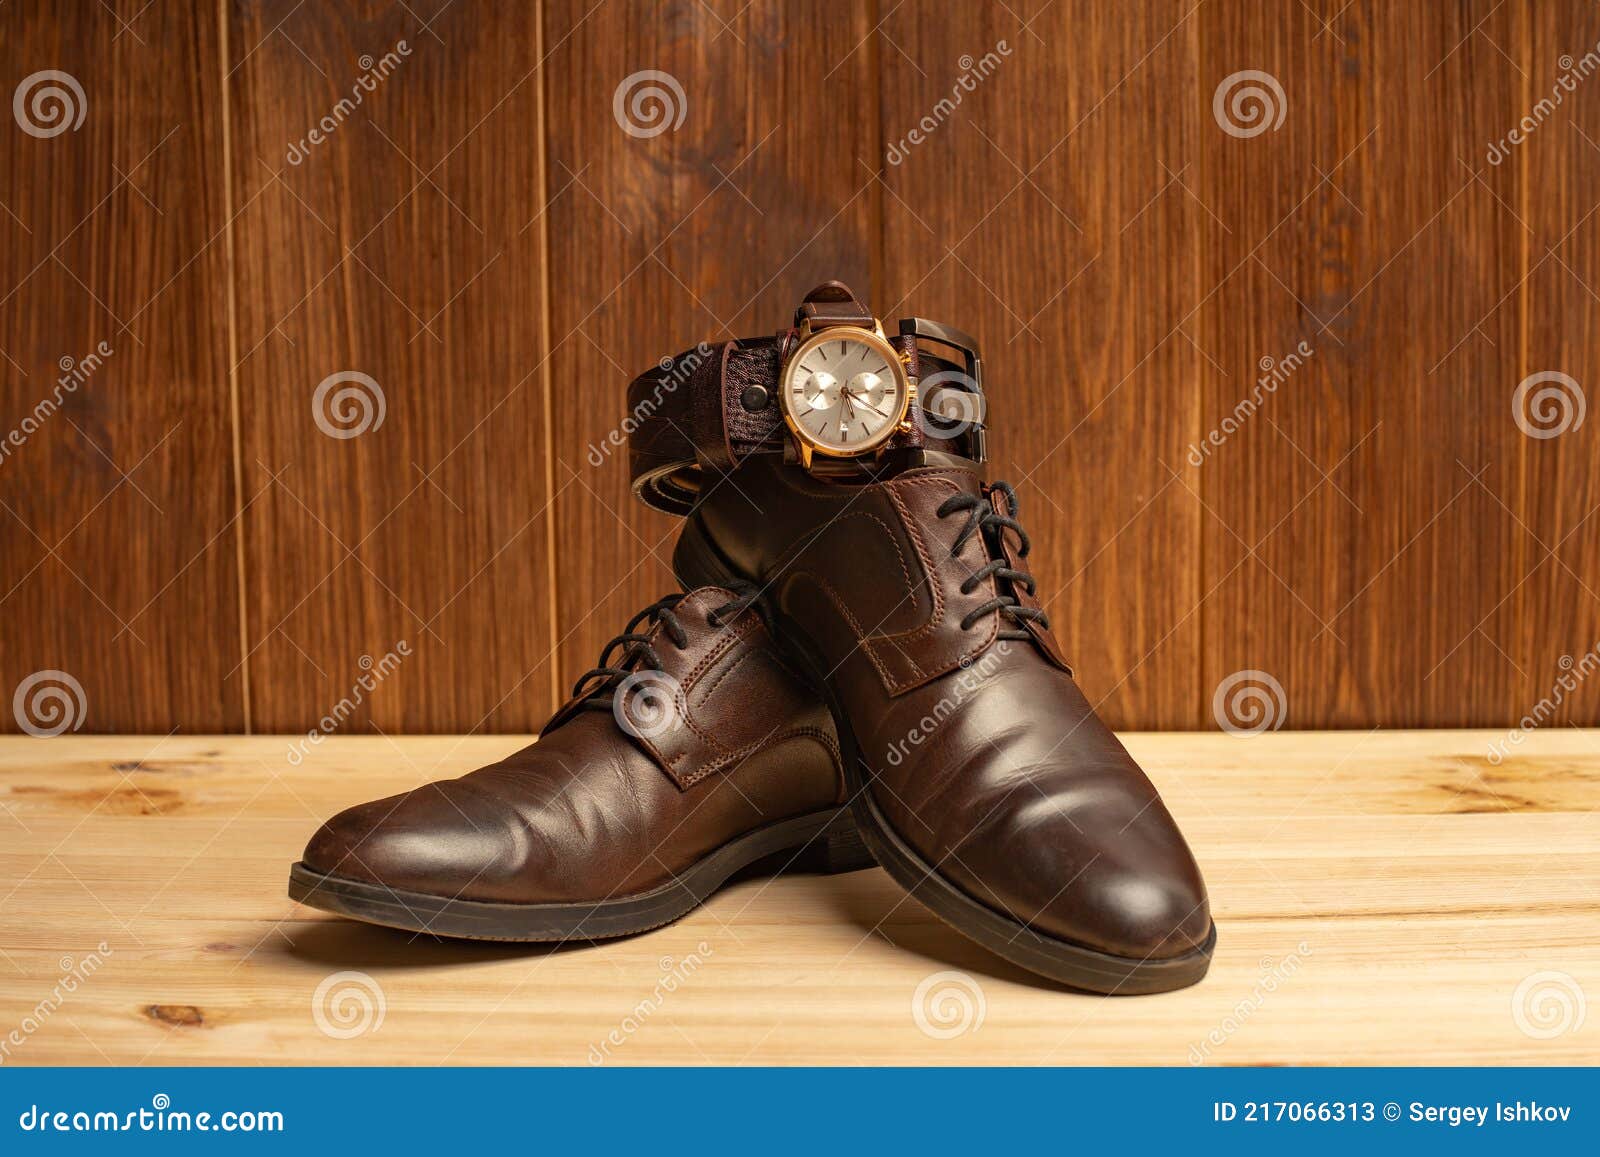 aceleración fácil de lastimarse Descifrar Accesorios Para Hombre Con Zapatos De Cinturón De Cuero Marrón Y Reloj  Sobre Fondo De Madera Imagen de archivo - Imagen de tapa, estilo: 217066313